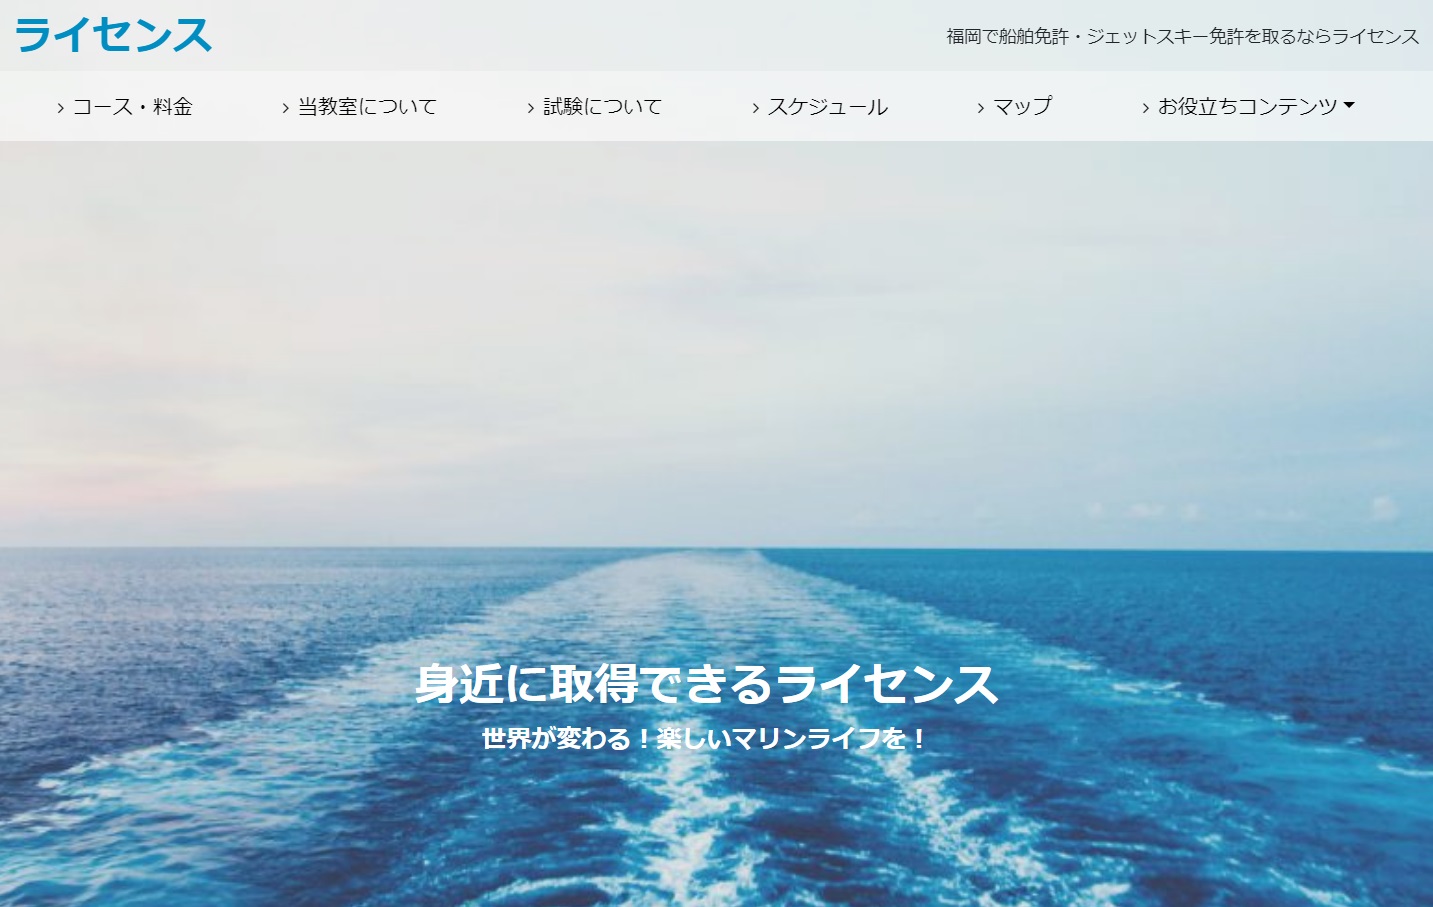 福岡県 (有）ライセンスで小型船舶免許を取得